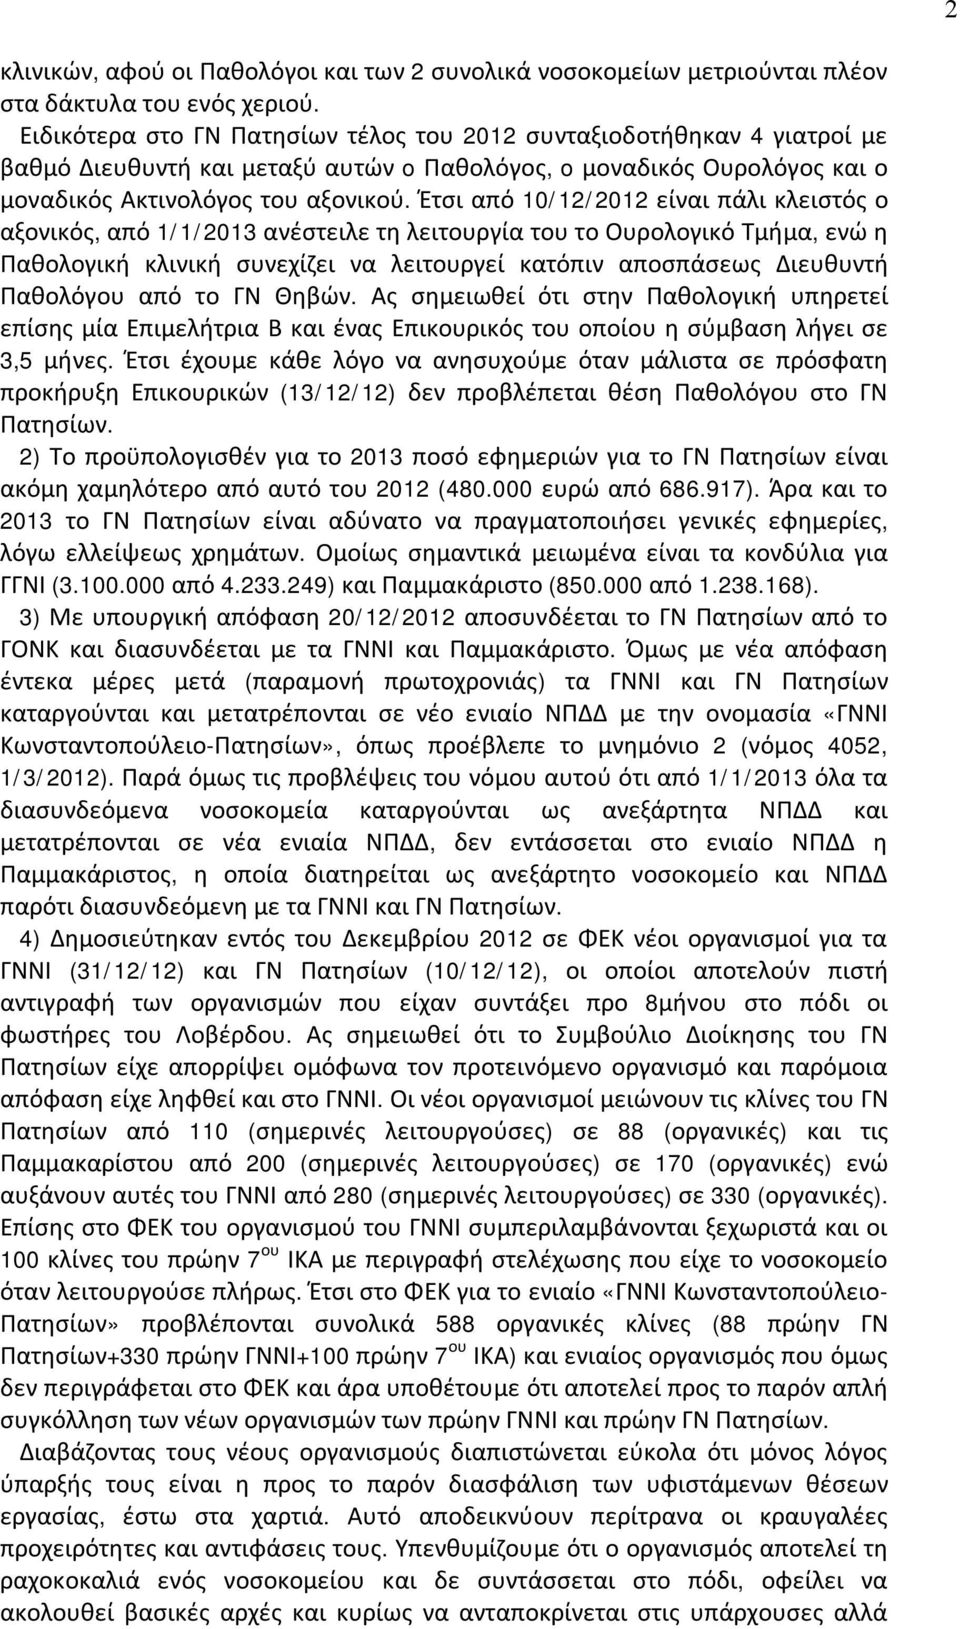 Έτσι από 10/12/2012 είναι πάλι κλειστός ο αξονικός, από 1/1/2013 ανέστειλε τη λειτουργία του το Ουρολογικό Τμήμα, ενώ η Παθολογική κλινική συνεχίζει να λειτουργεί κατόπιν αποσπάσεως Διευθυντή